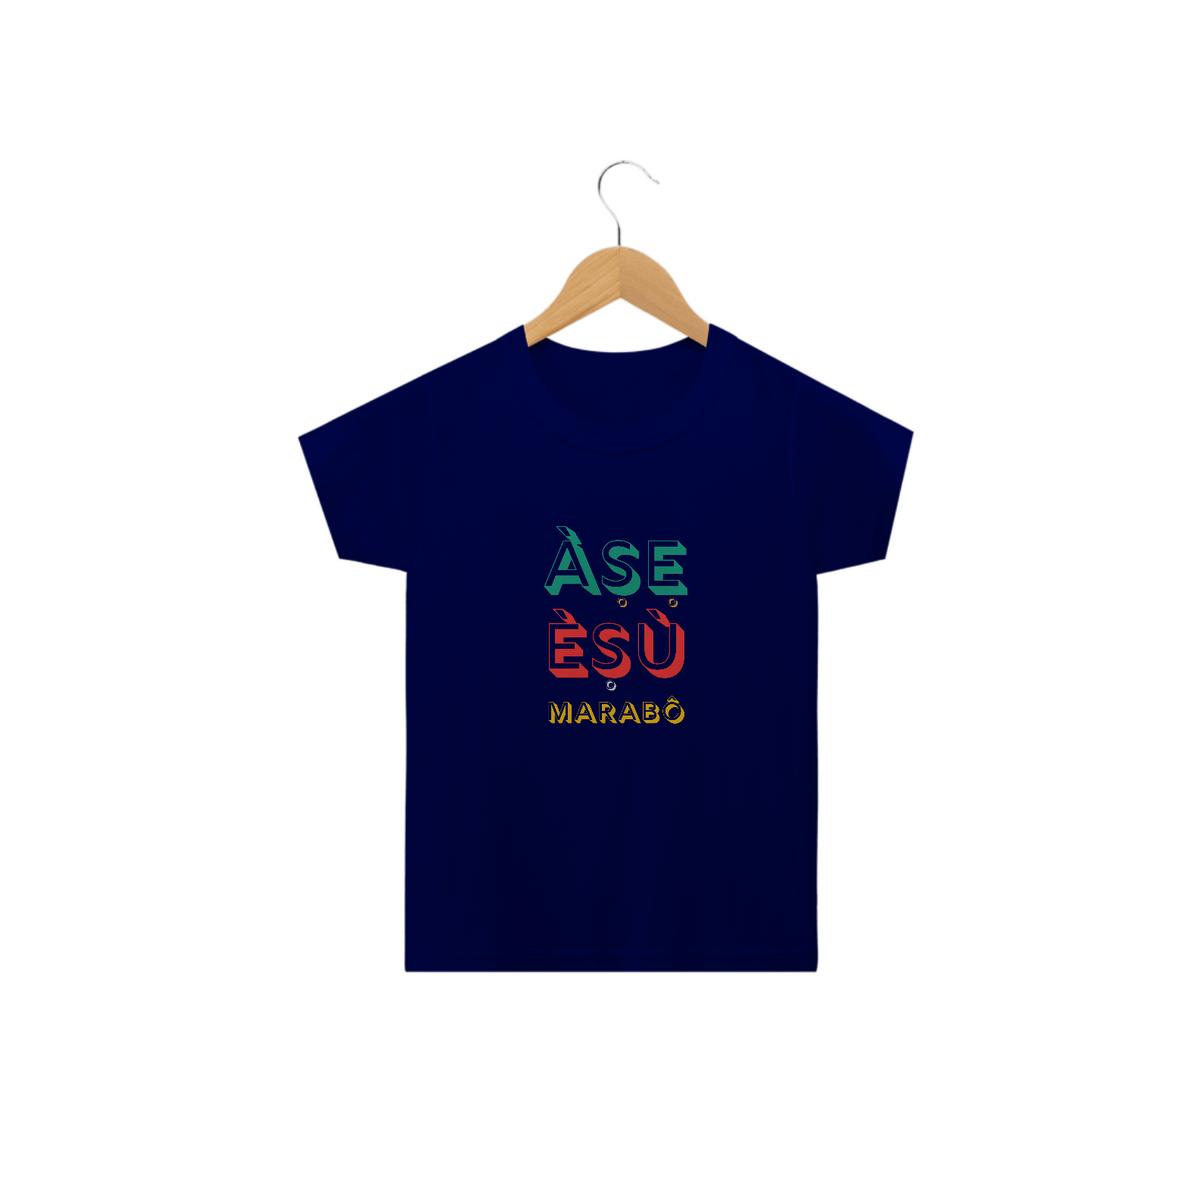 Nome do produto: Camiseta Infantil Exu Marabô Axé Asé 100% Algodão Fio 24.1, 145g costura simples e gola ribana